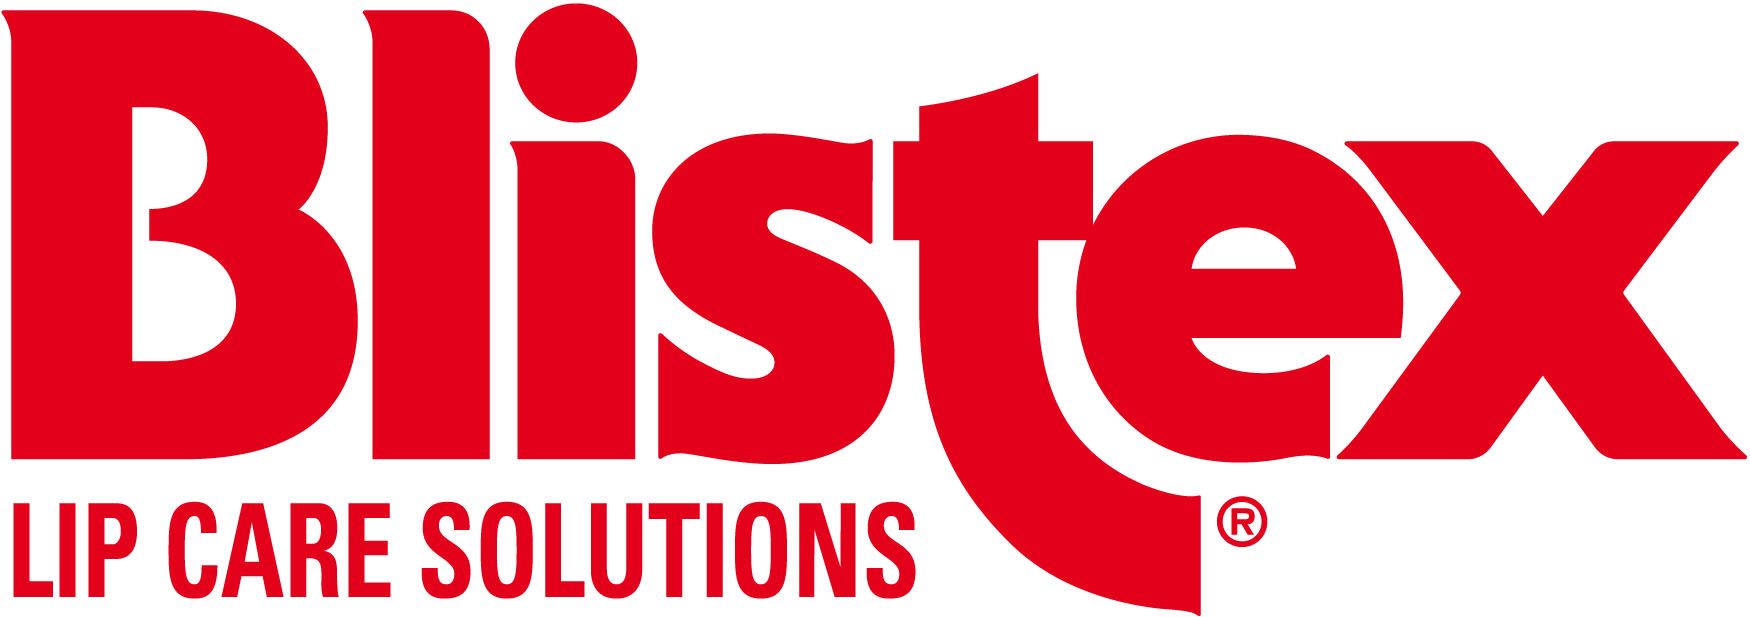 Партнеры конкурса BLISTEX lip care solutions